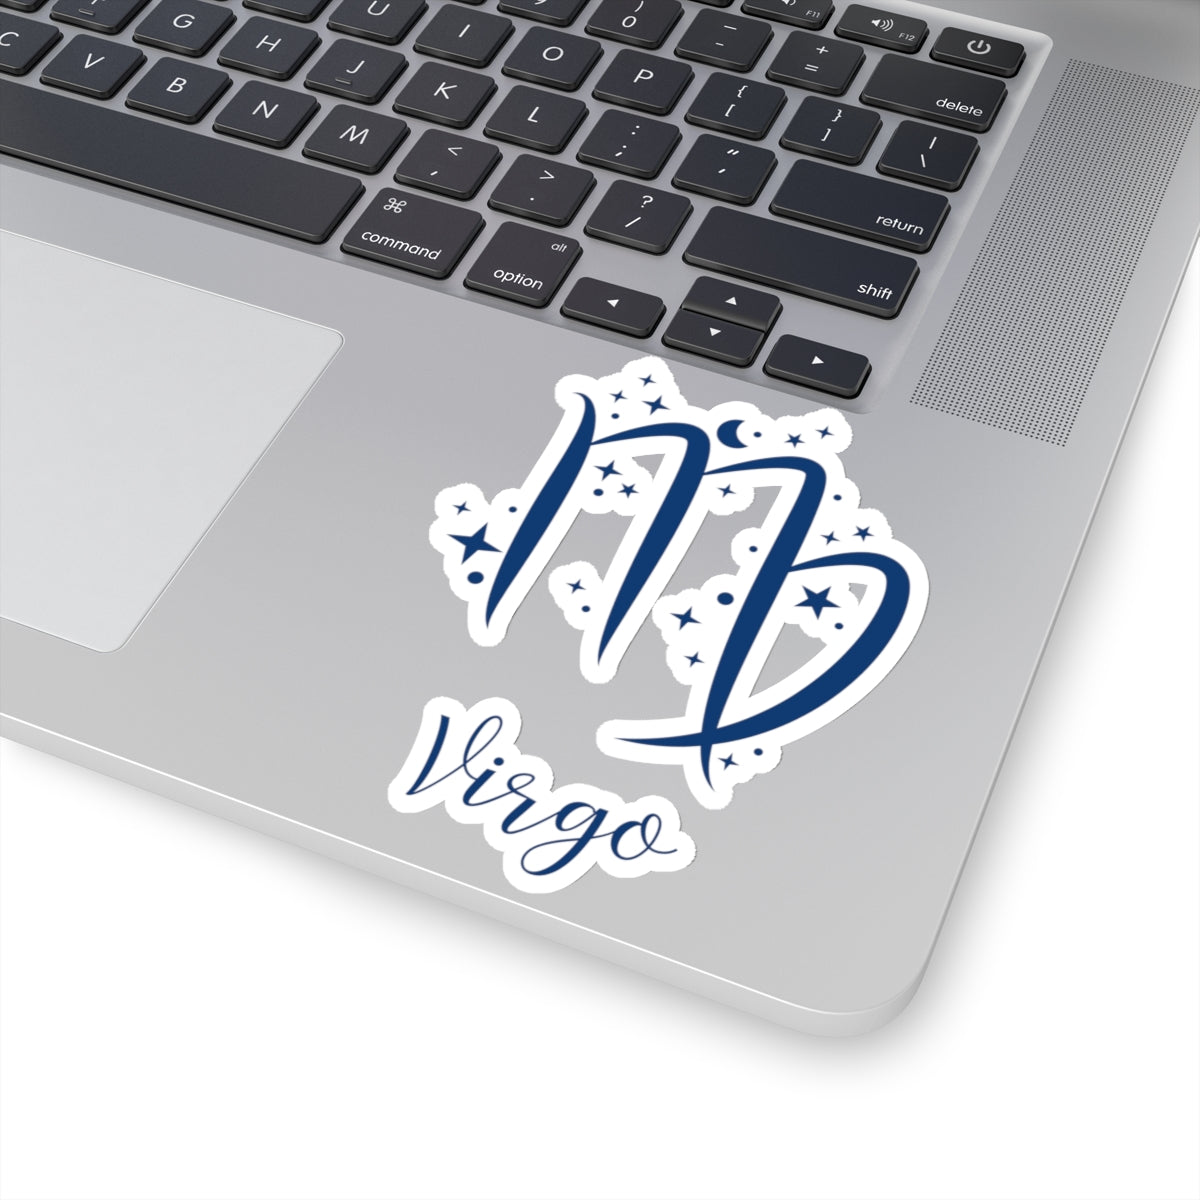 VIRGO glyph & stars sticker